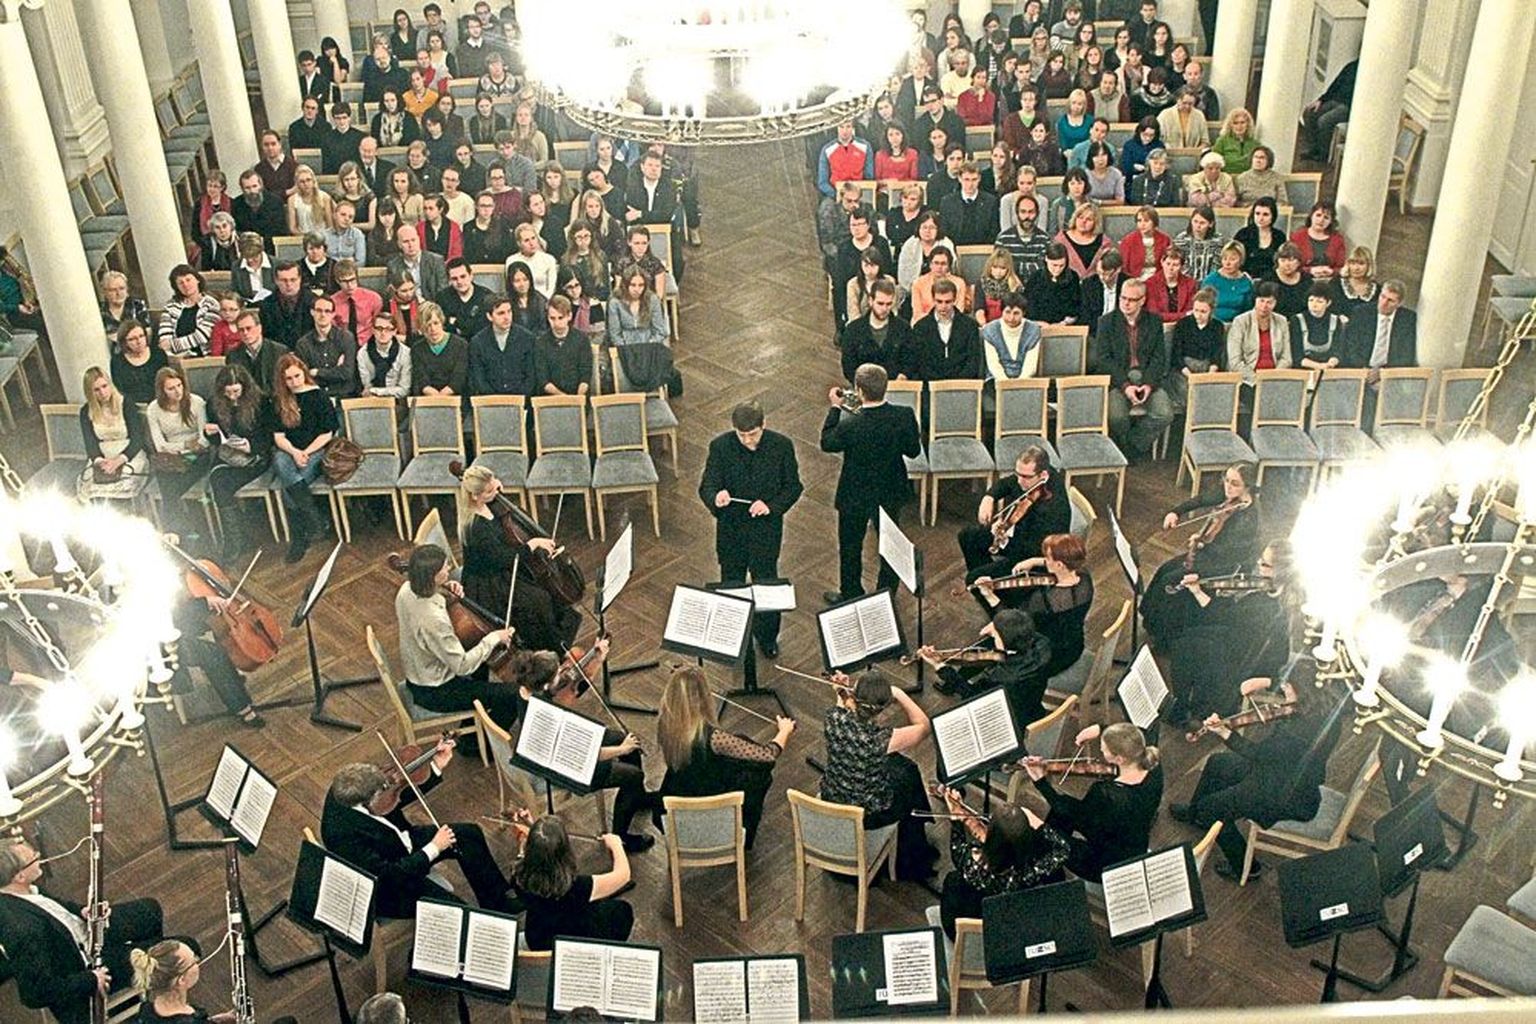 Ülikooli aulas kõlanud kontserdist «Musica sacra» oli tulnud osa saama peaaegu täissaal publikut.